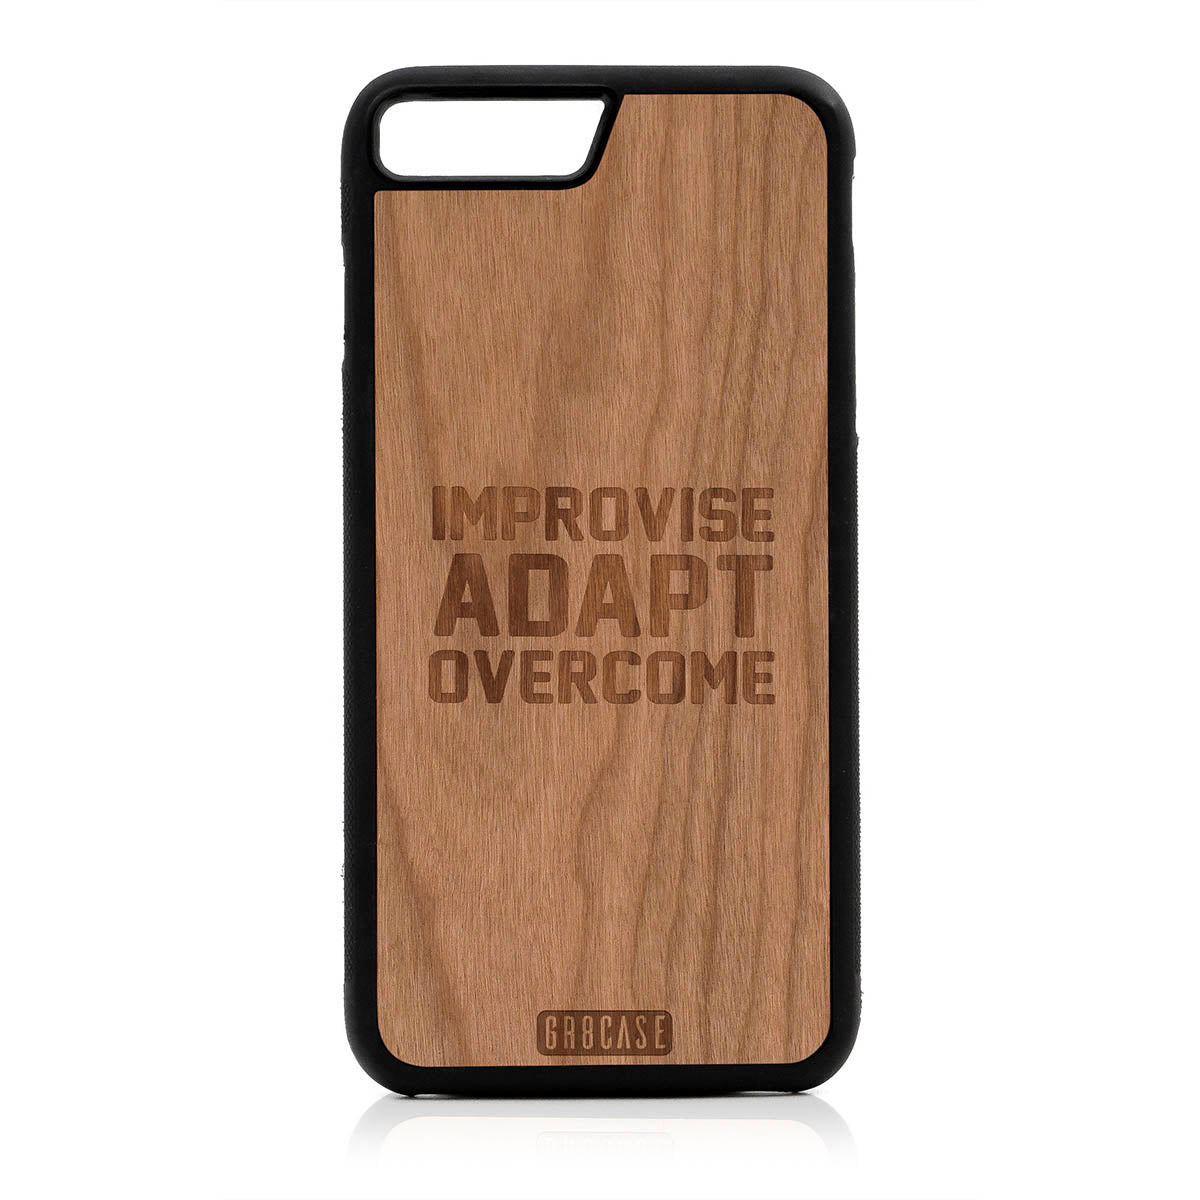 Improvise Adapt Overcome Design Wood Case For iPhone 7 Plus / 8 Plus